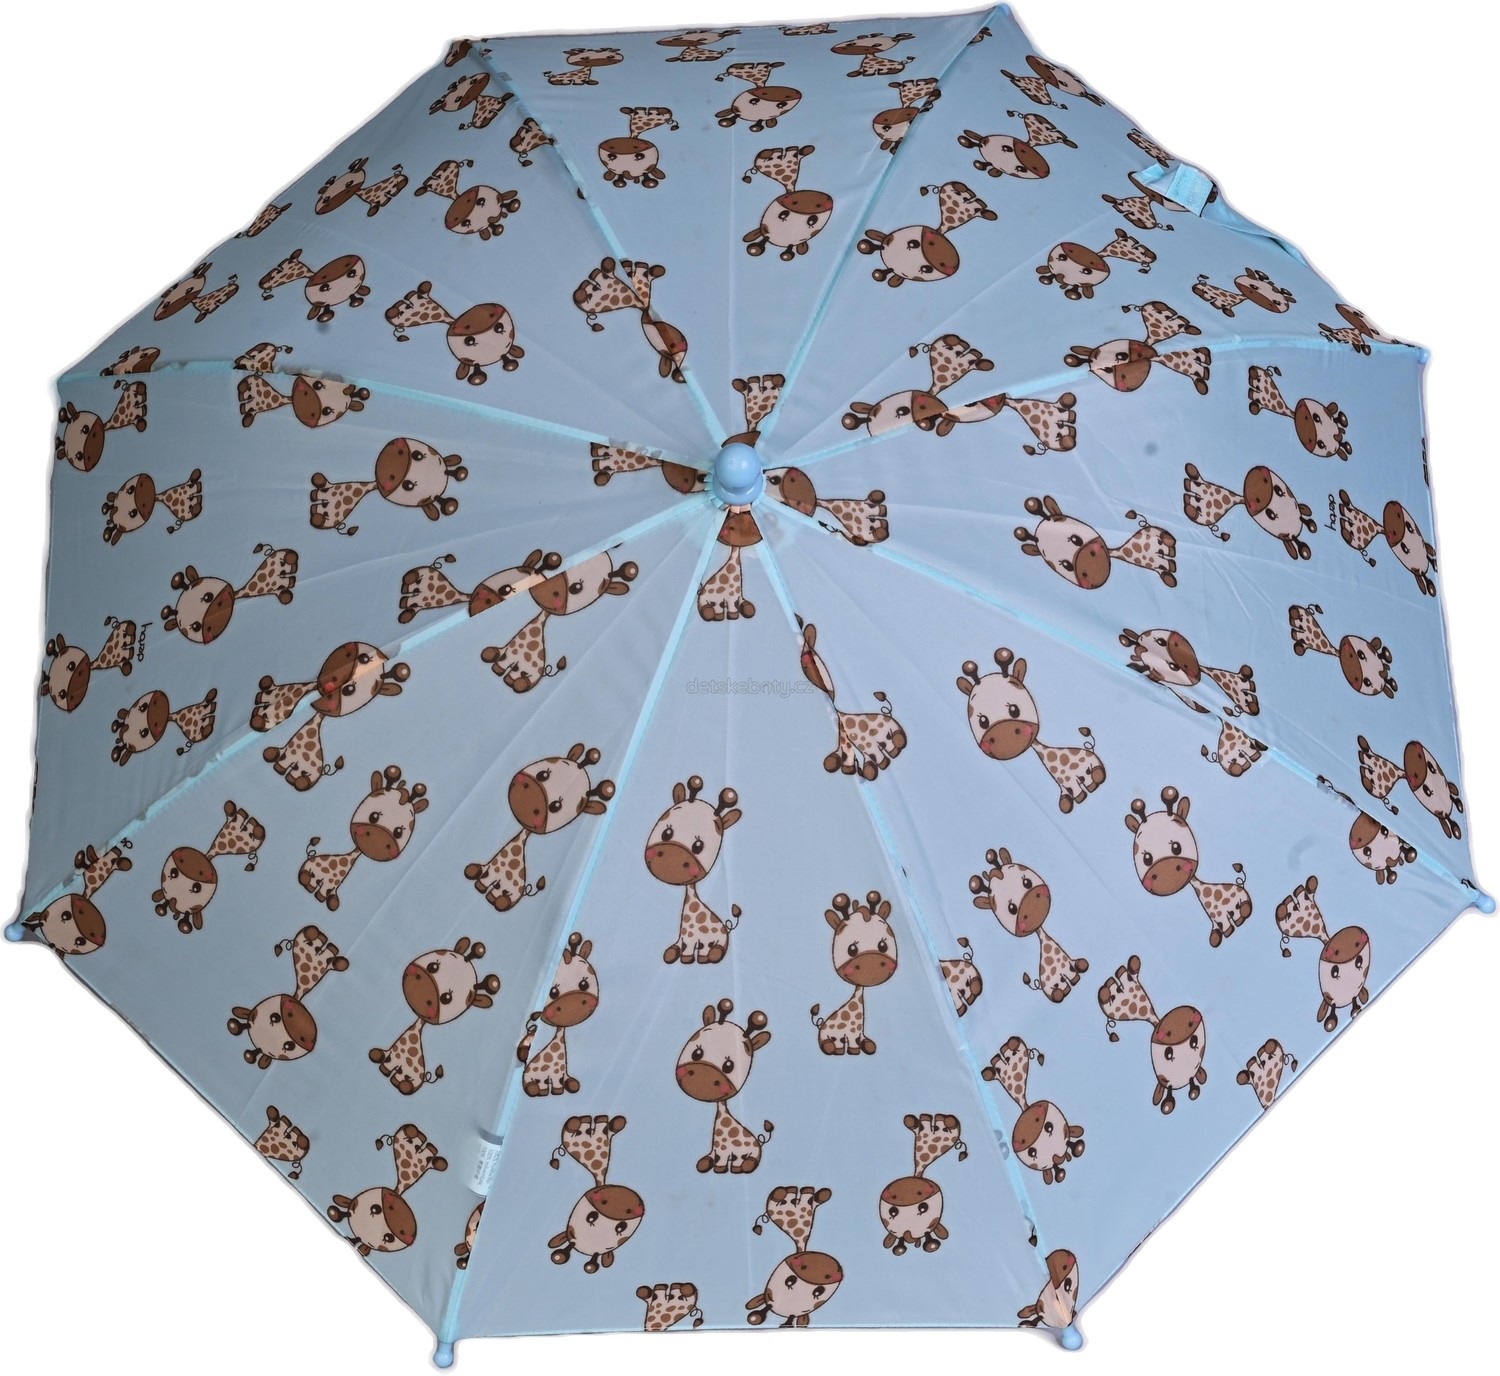 Deštník Doppler 72670G02 ŽIRAFA